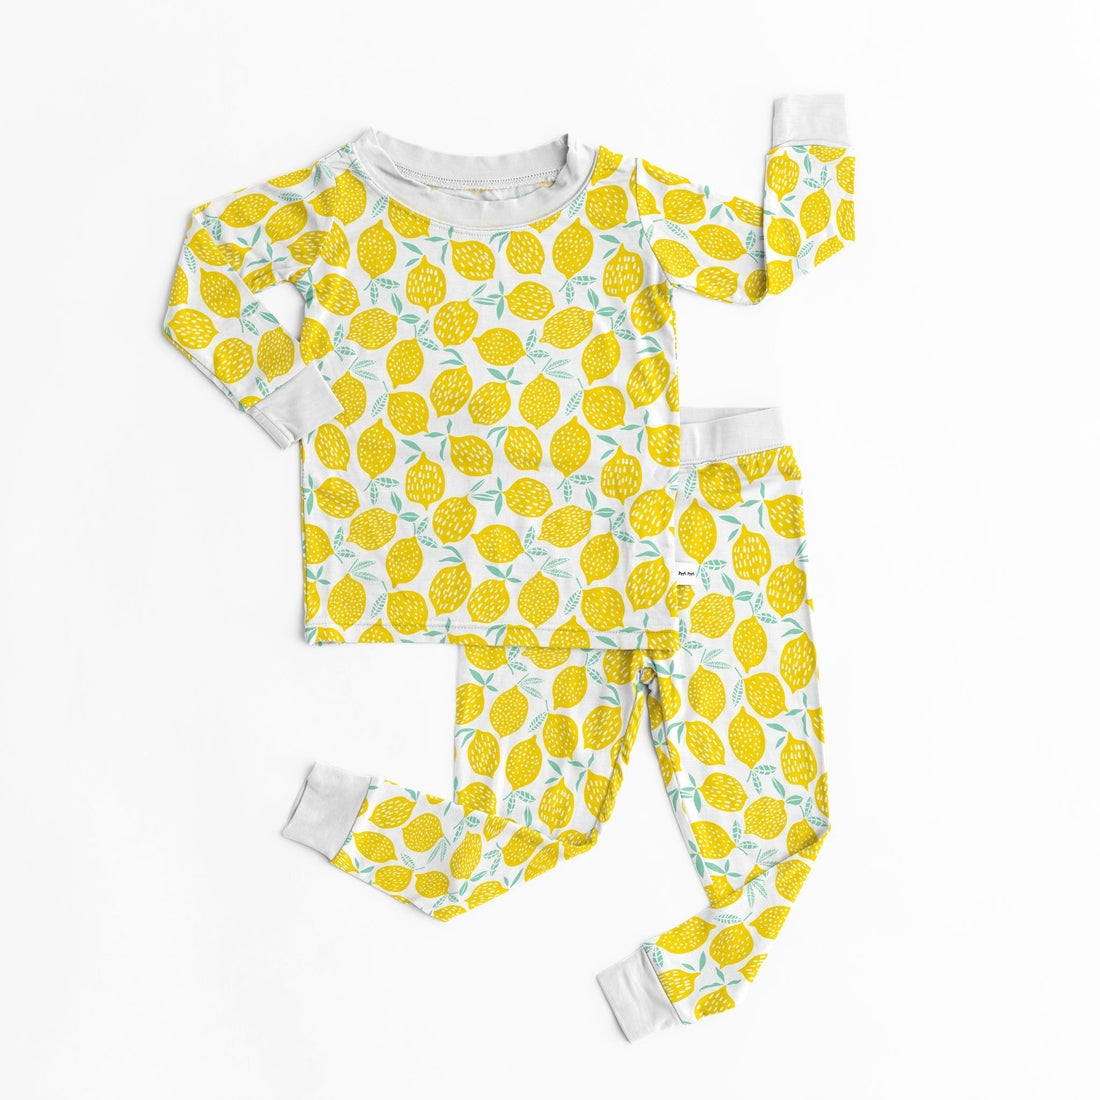 Little Sleepies lemons pajamas